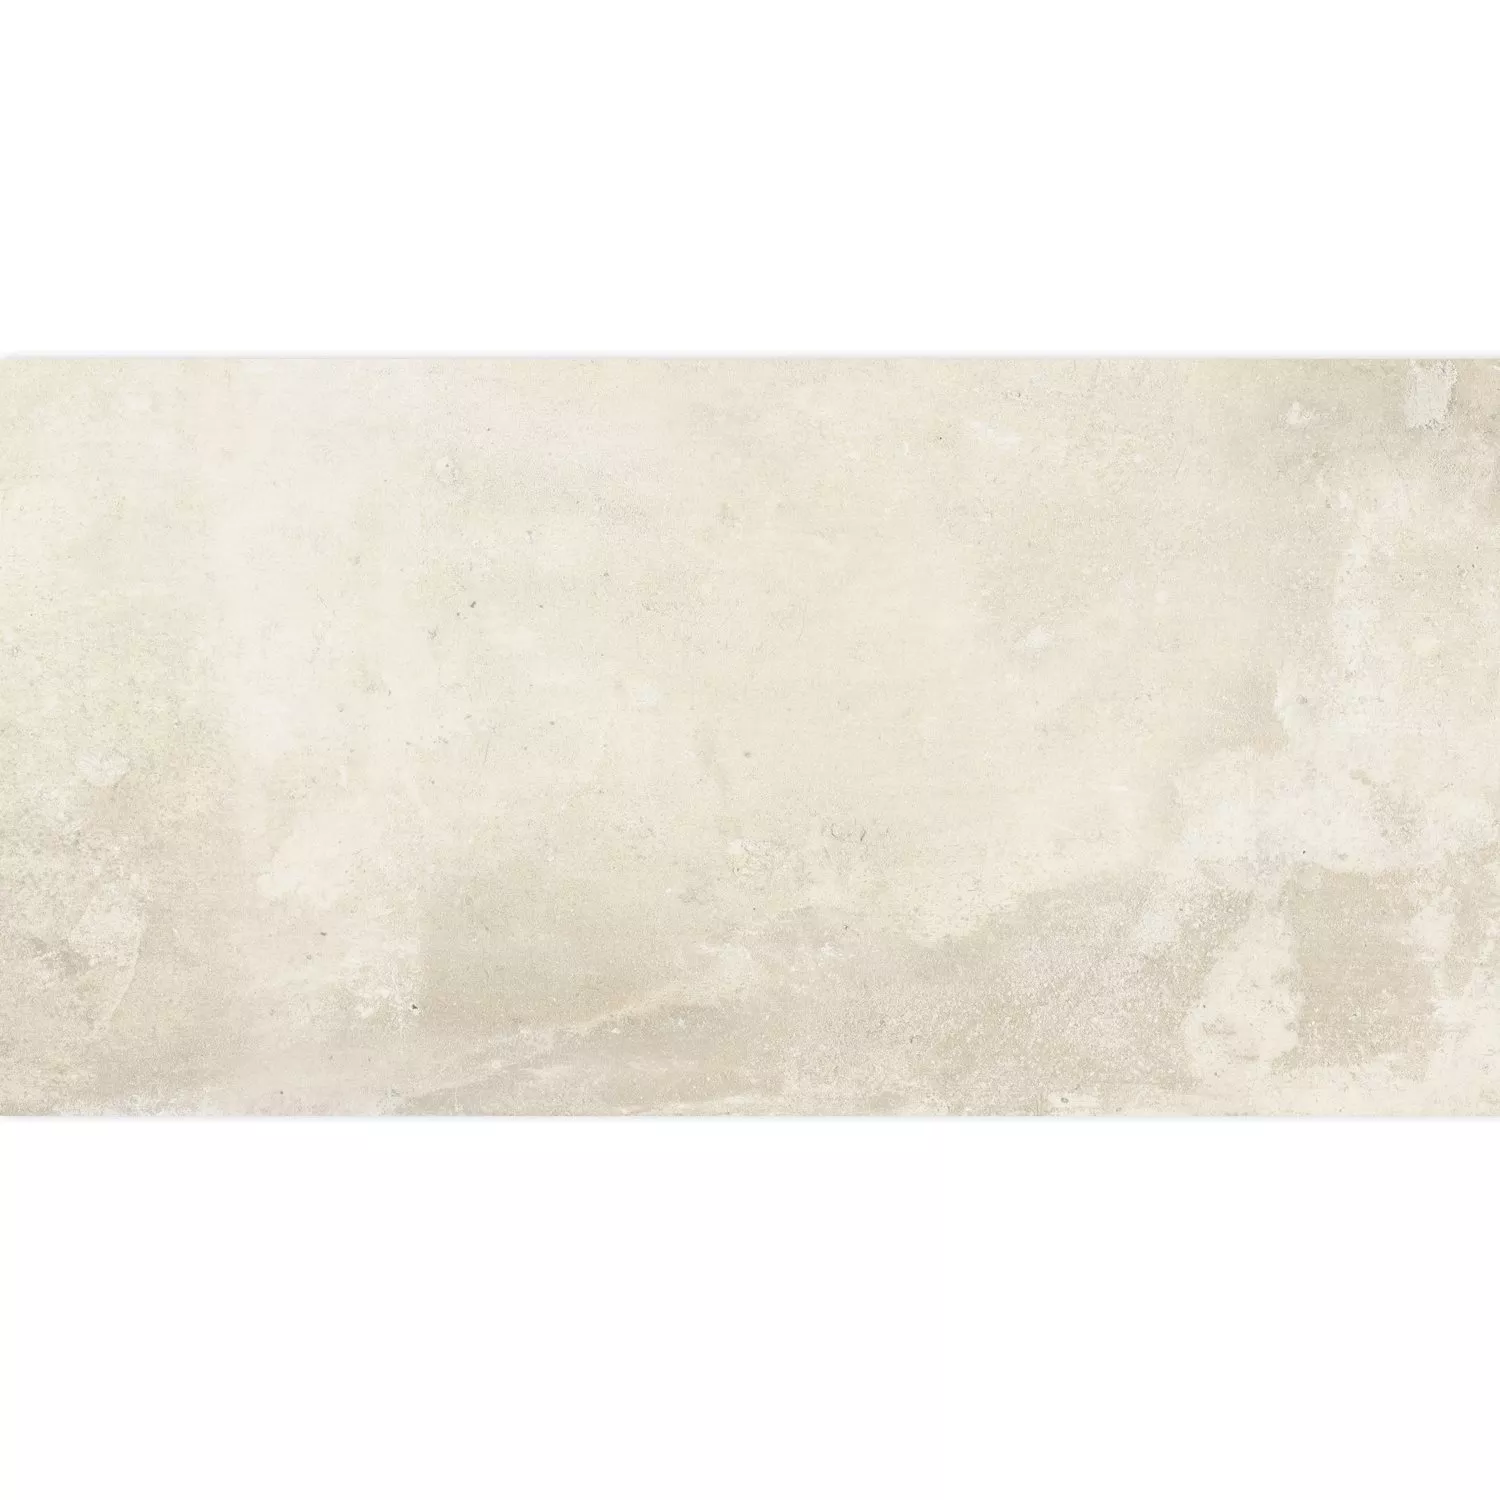 Πρότυπο Πλακάκι Δαπέδου Εμφάνιση Tσιμέντου Maryland Μπεζ 30x60cm